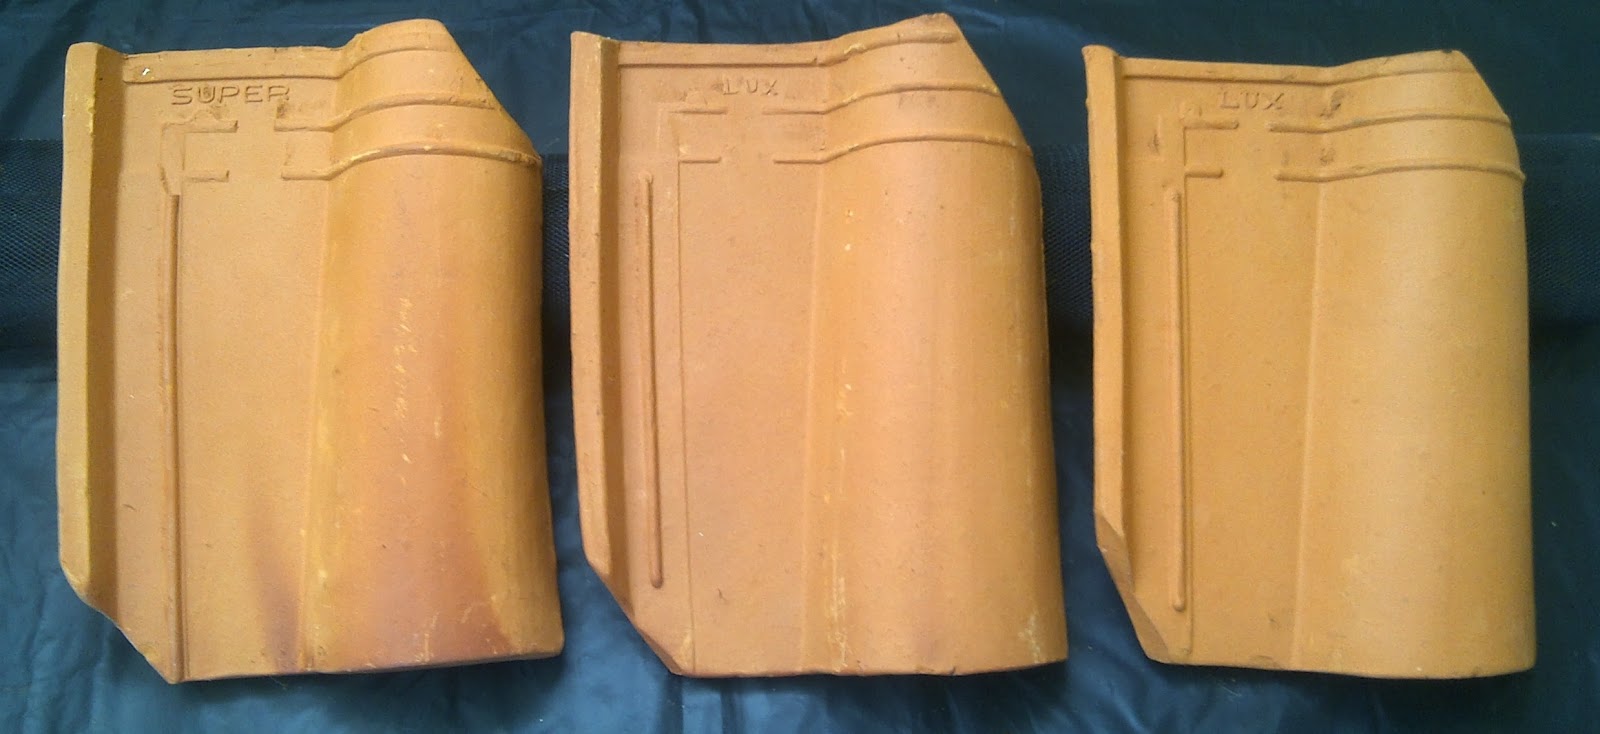  Genteng  Jatiwangi  Morando Glasur Keramik  Genteng  